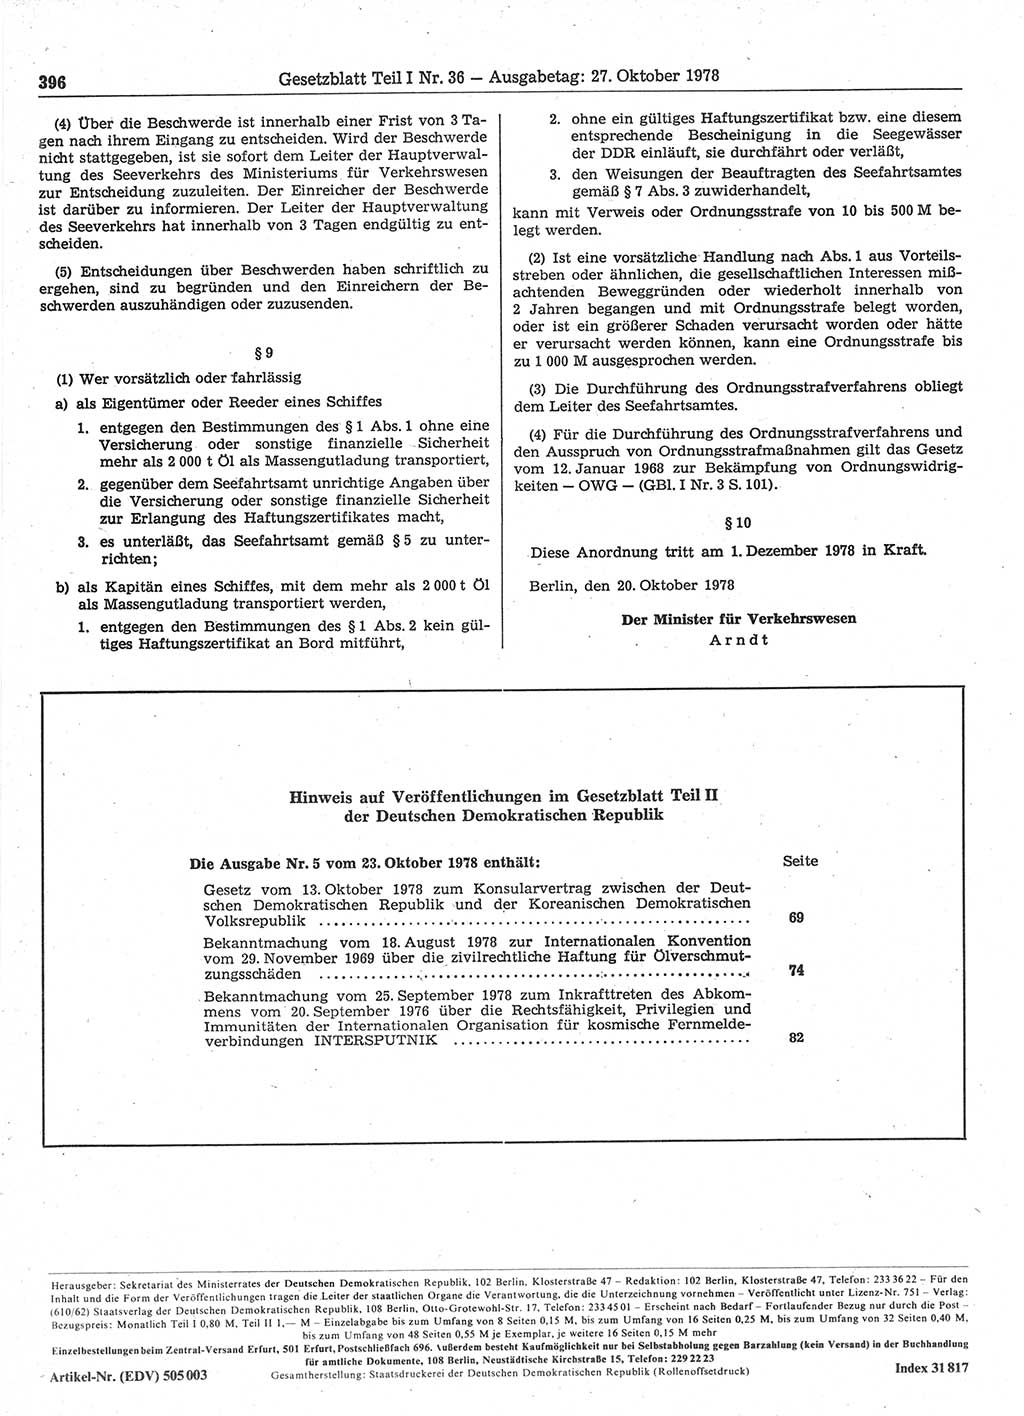 Gesetzblatt (GBl.) der Deutschen Demokratischen Republik (DDR) Teil Ⅰ 1978, Seite 396 (GBl. DDR Ⅰ 1978, S. 396)